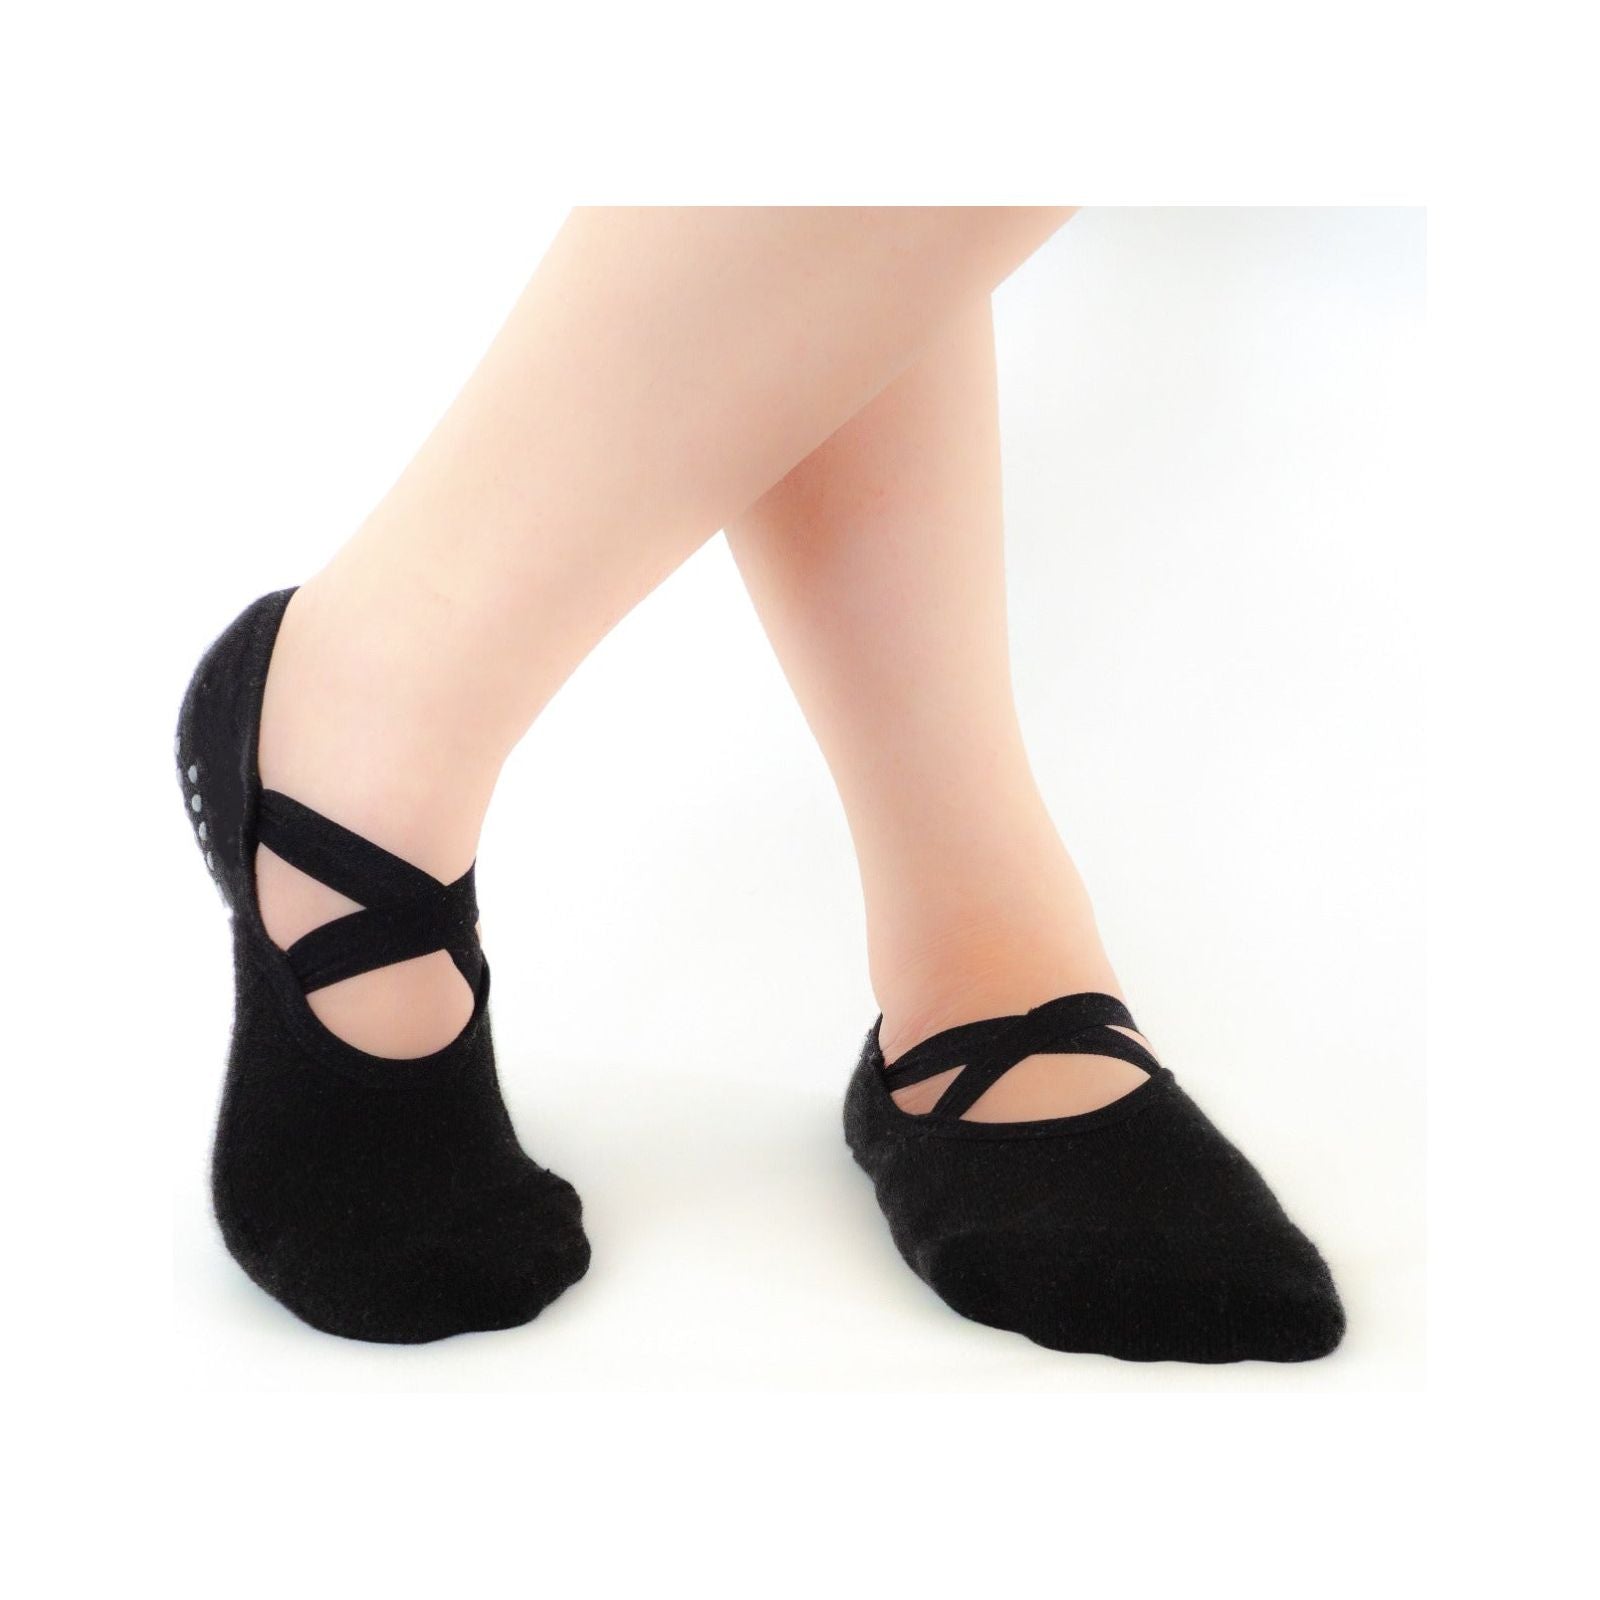 Yoga Socks for Women Non Slip, Sticky Socks Grip Socks for Pilates, Dance,  Barre